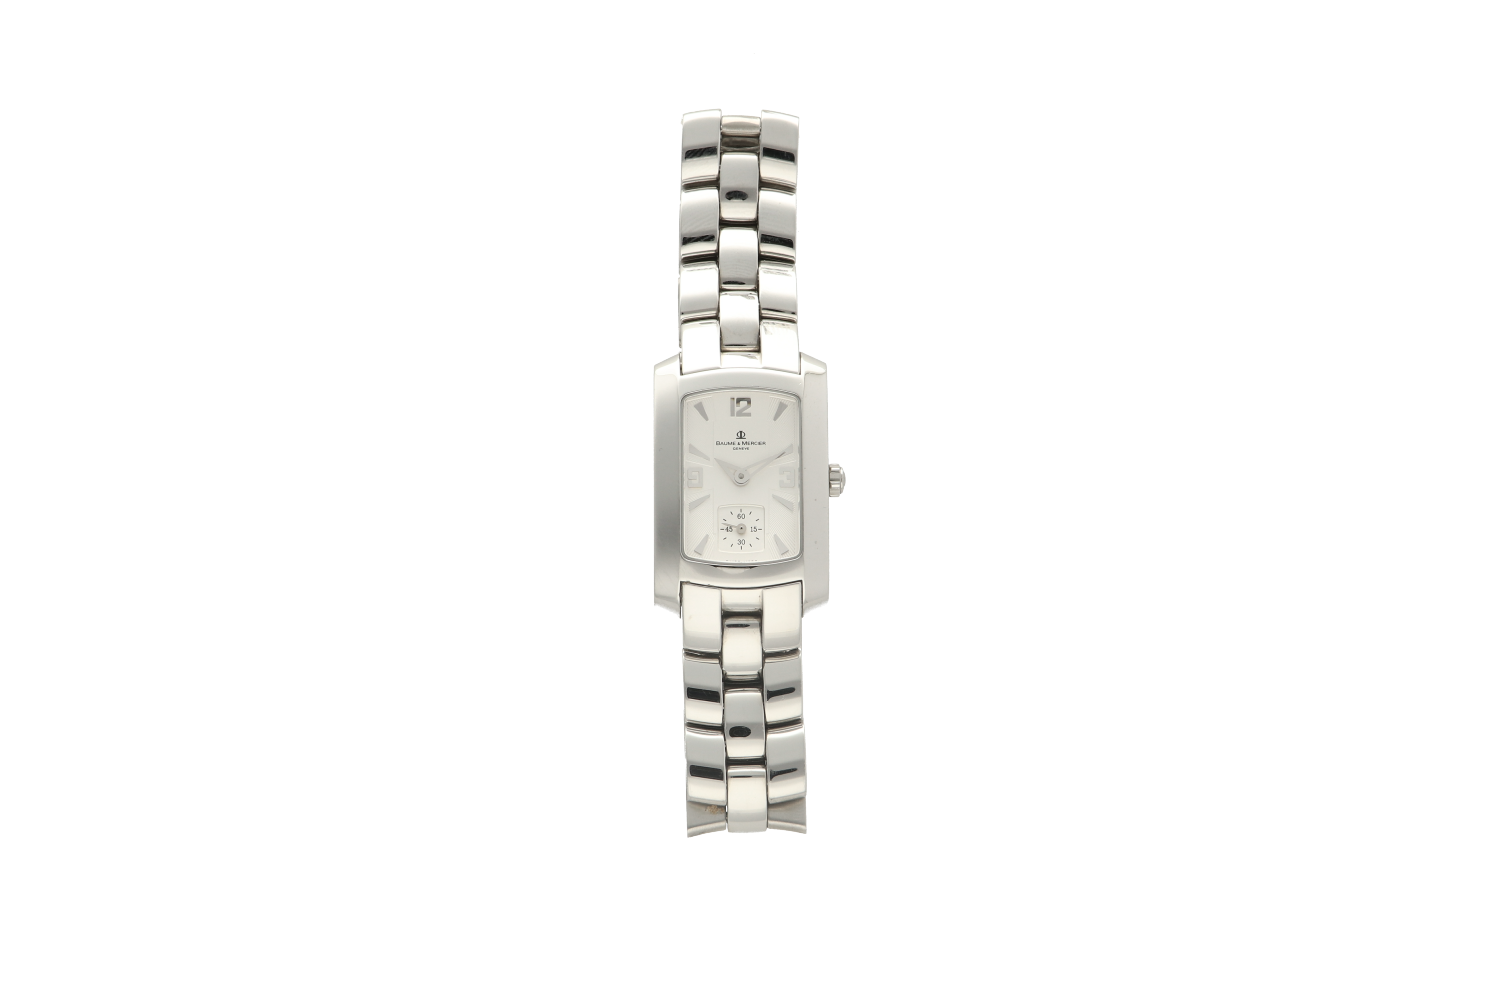 Ρολόι γυναικείο BAUME & MERCIER, 8013 HAMPTON MILLEIS σε ατσάλι με μπρασελέ S/N 3612843